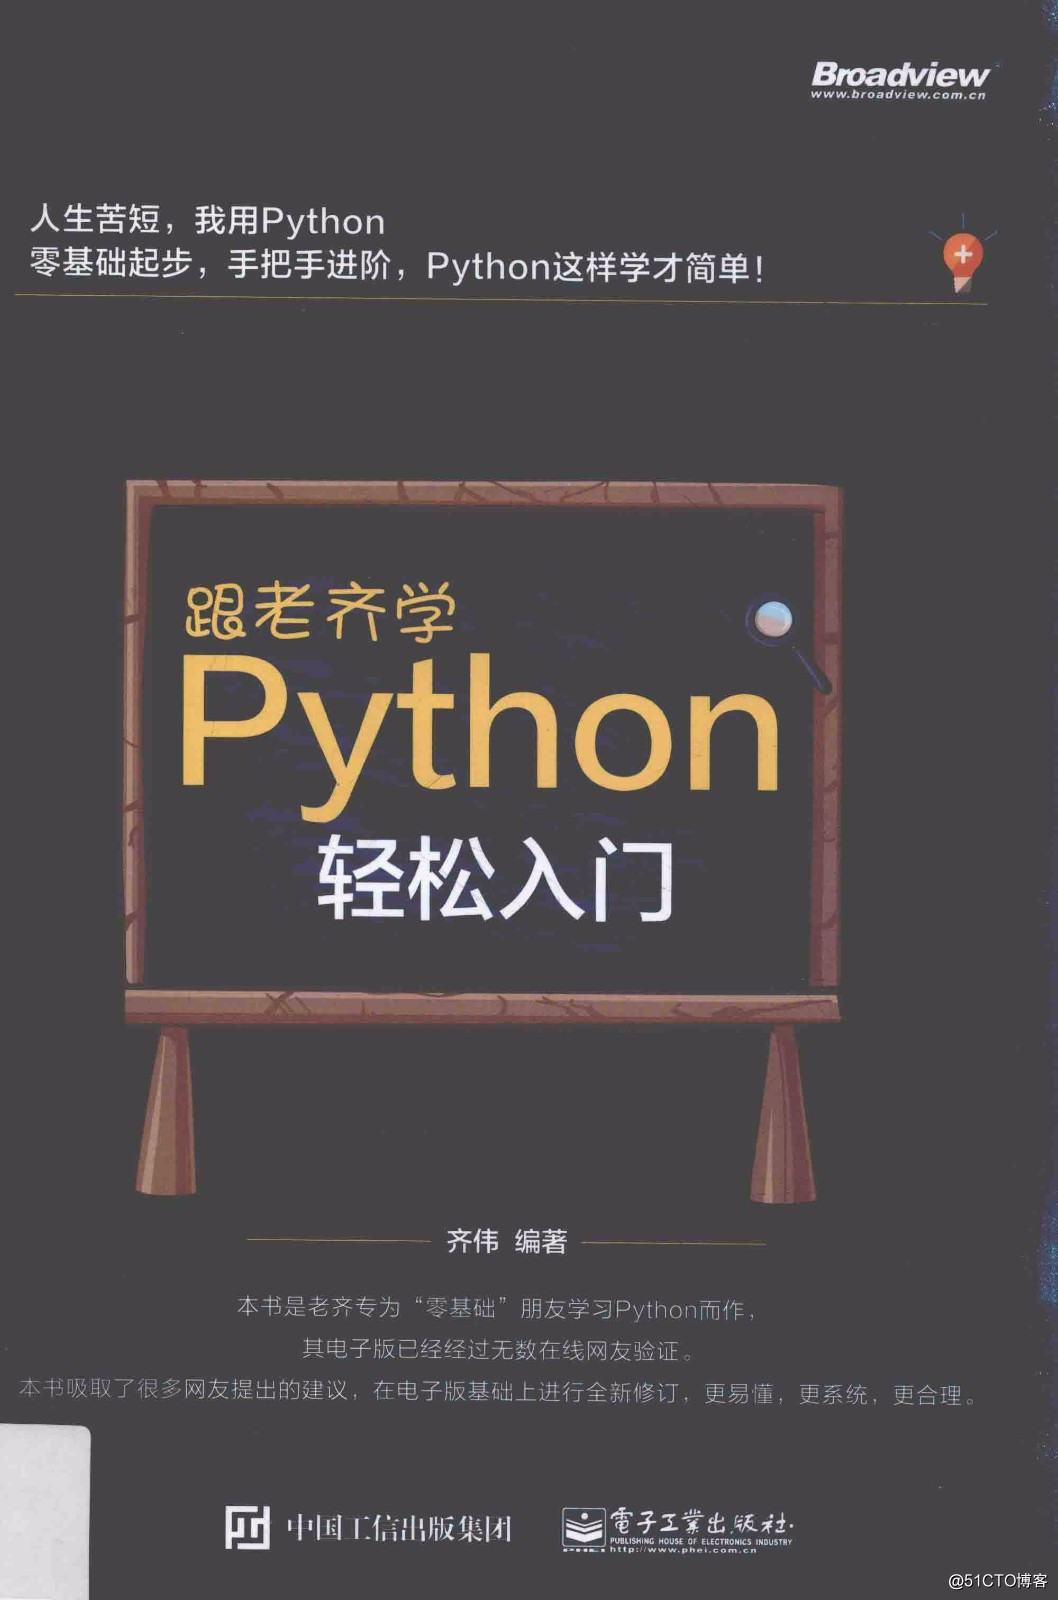 Python编程入门电子书及视频教程-非常详细『强烈推荐』